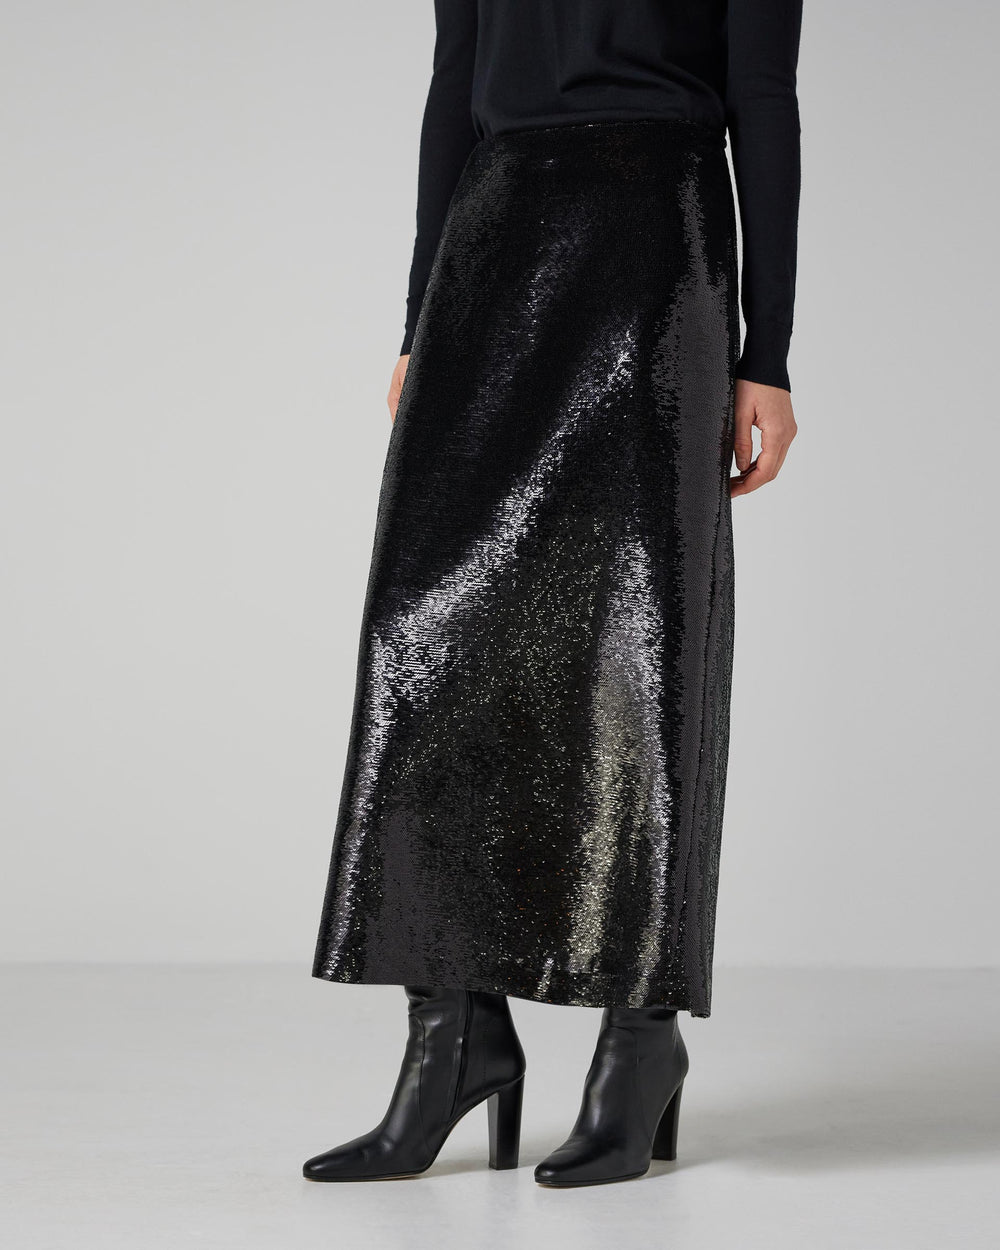 Nova Skirt in Flat Sequin, Black